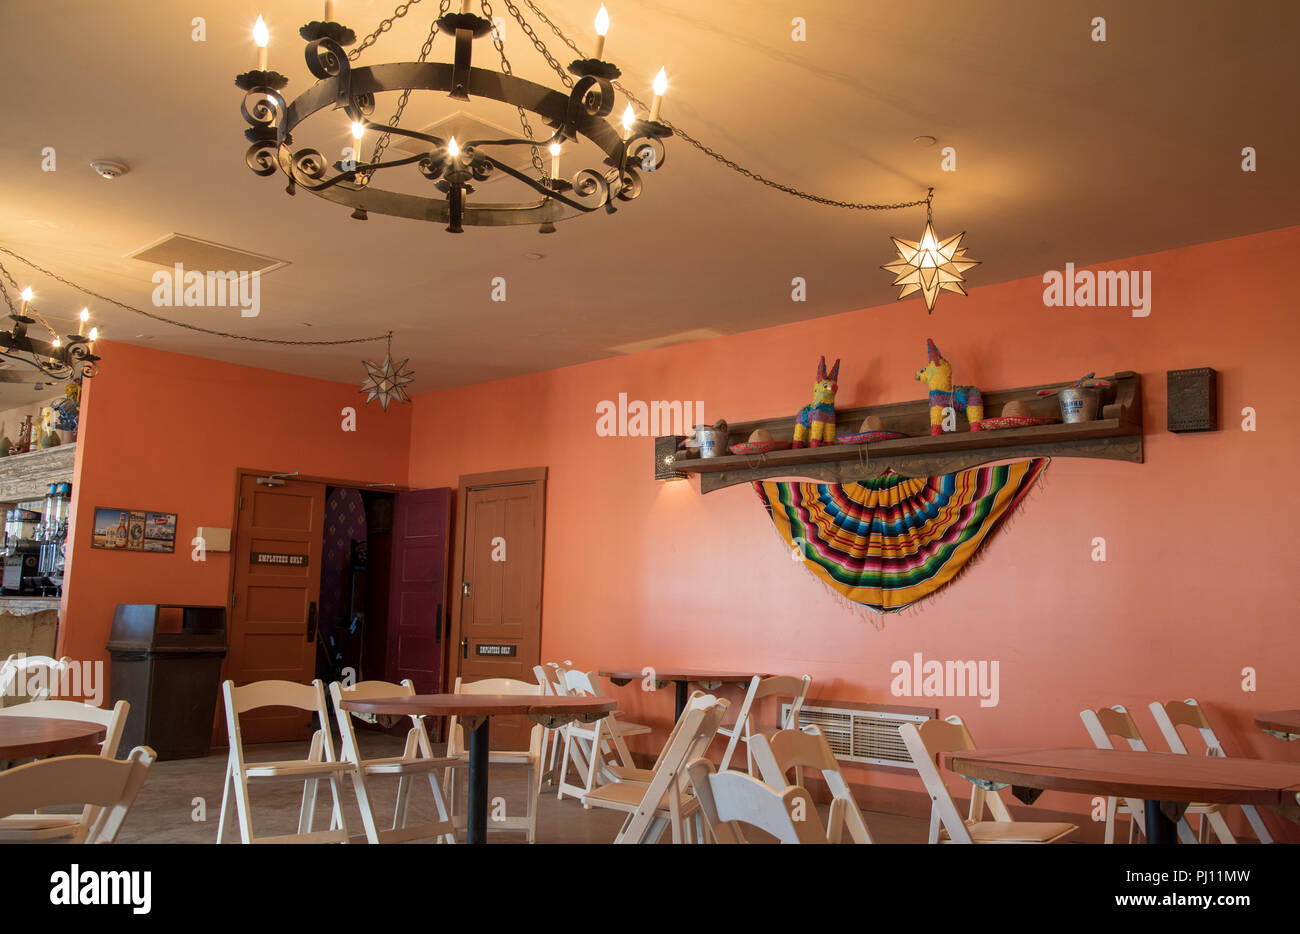 Innenraum von Restaurant und Bar mit Klappstühlen und westlichen Wand, alte Kerze stil Deckenleuchte Leuchte. Stockfoto